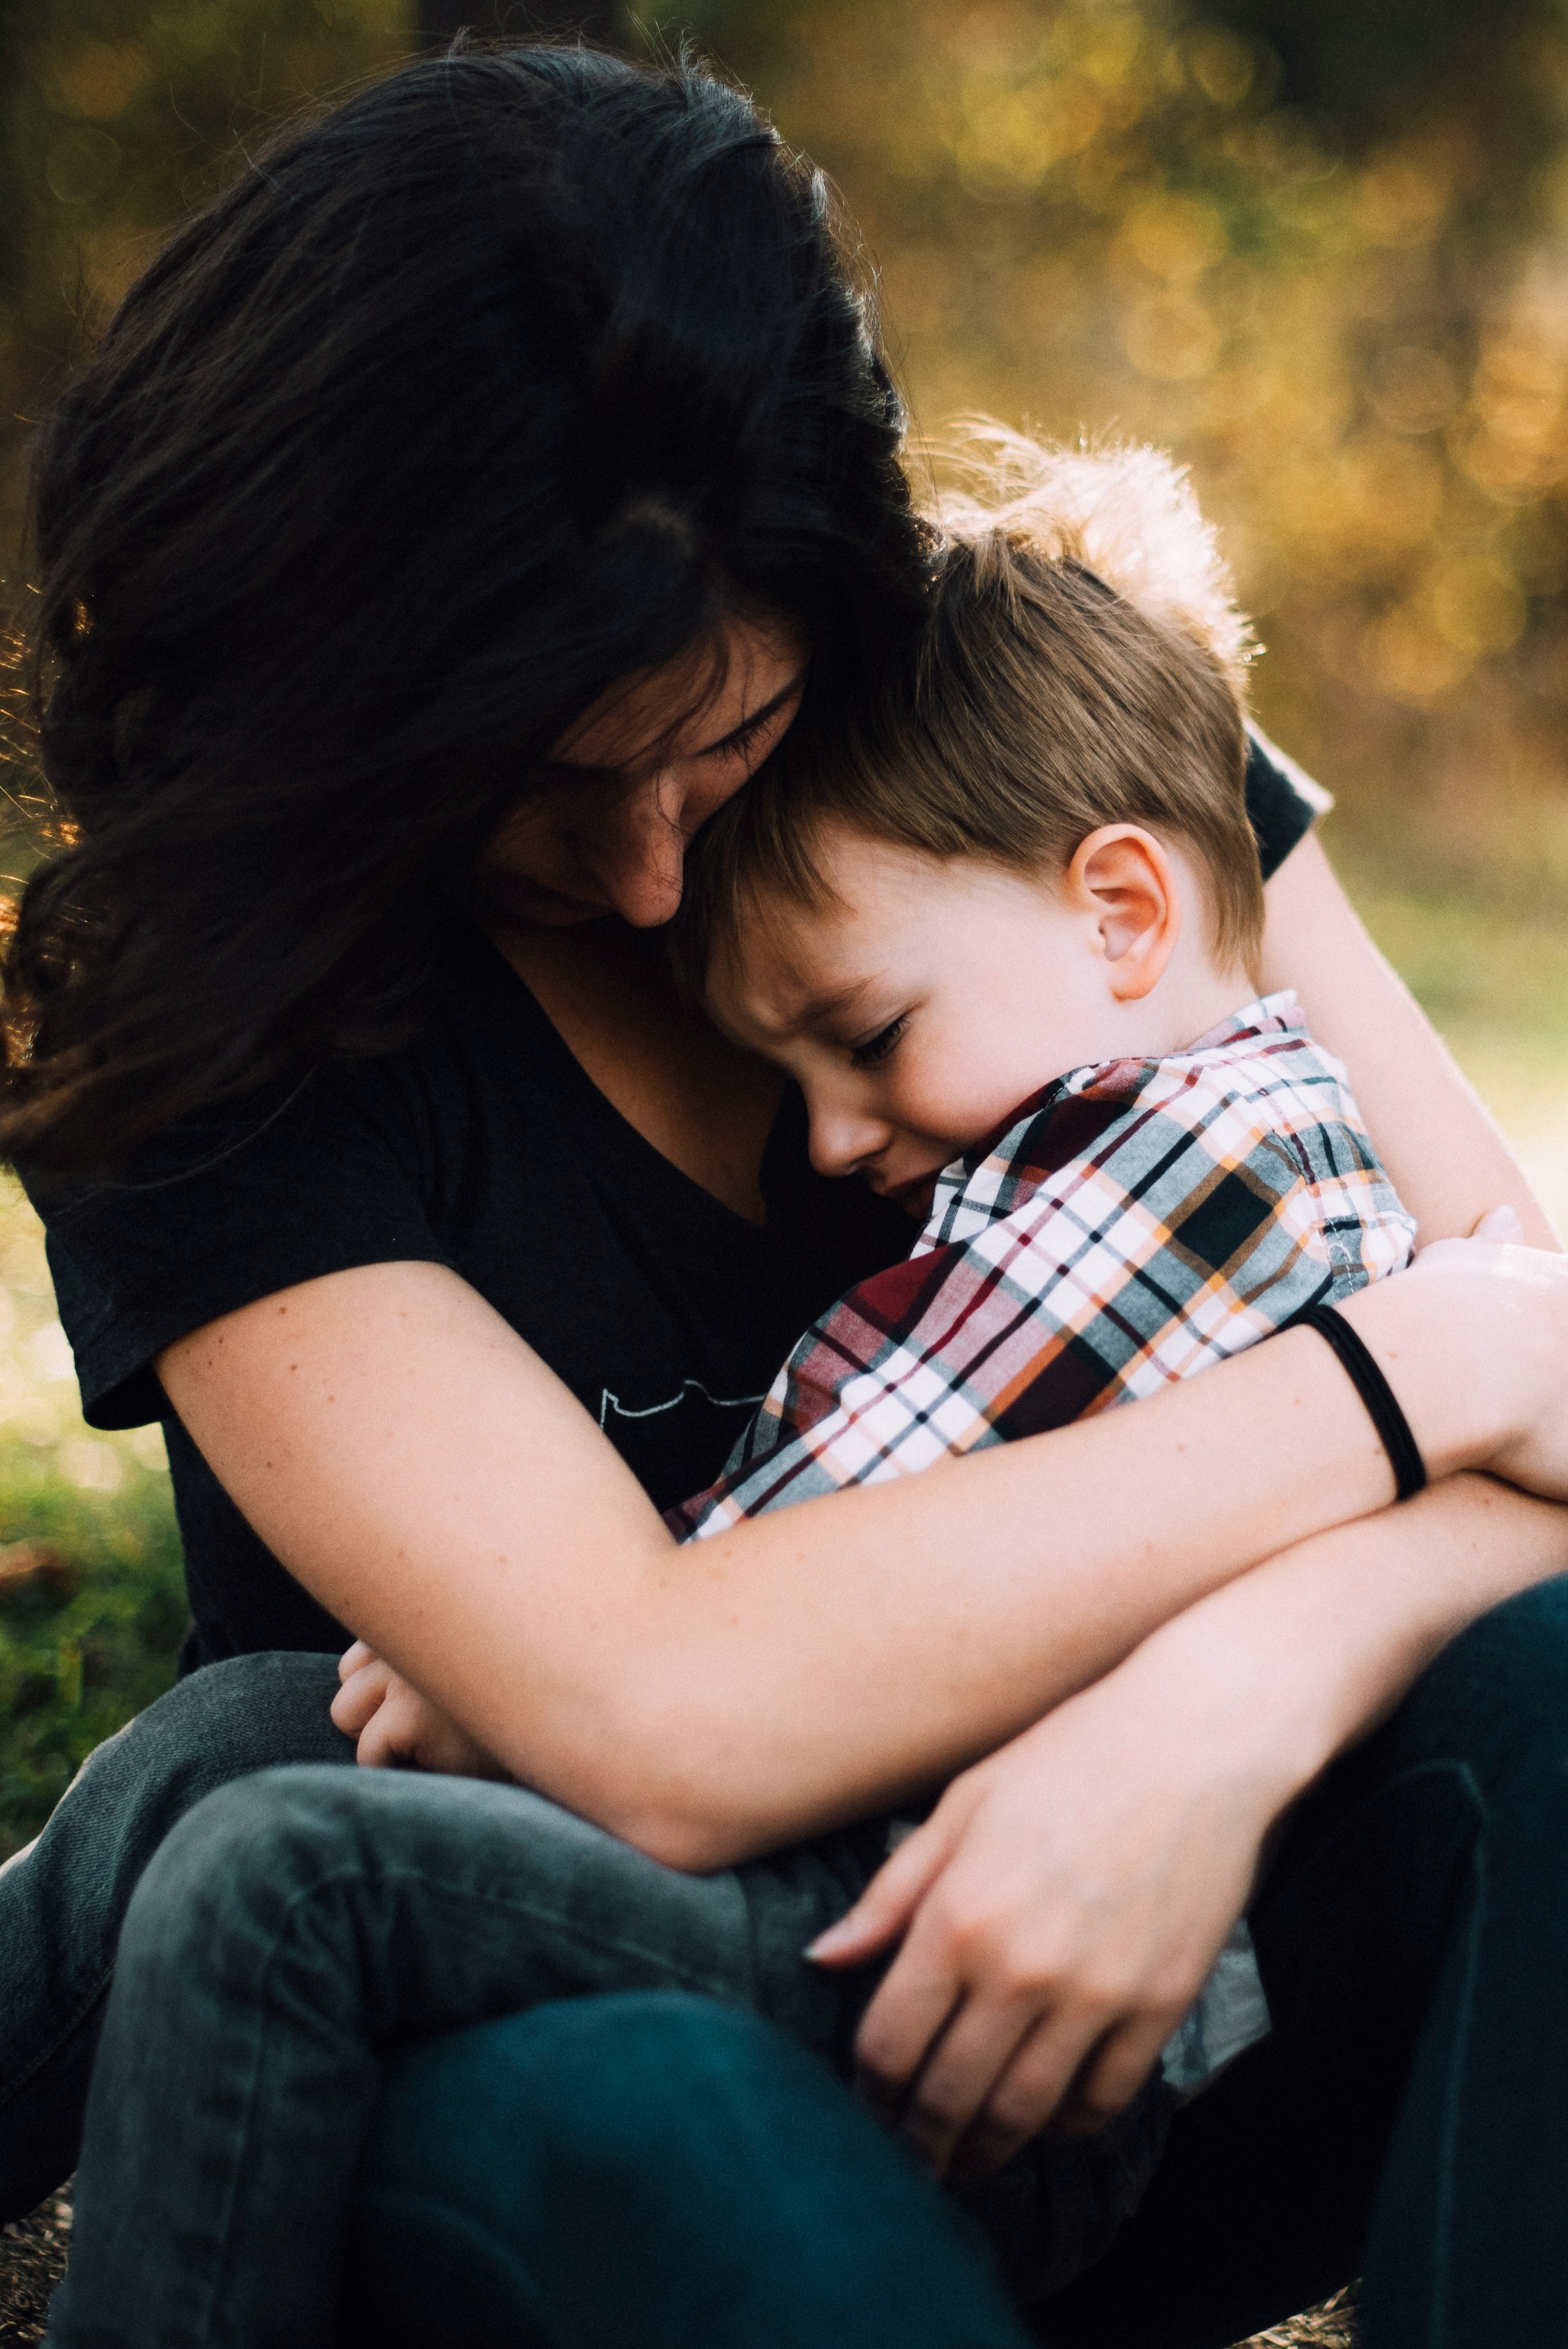 Una mujer abraza a un niño que llora | Fuente: Unsplash